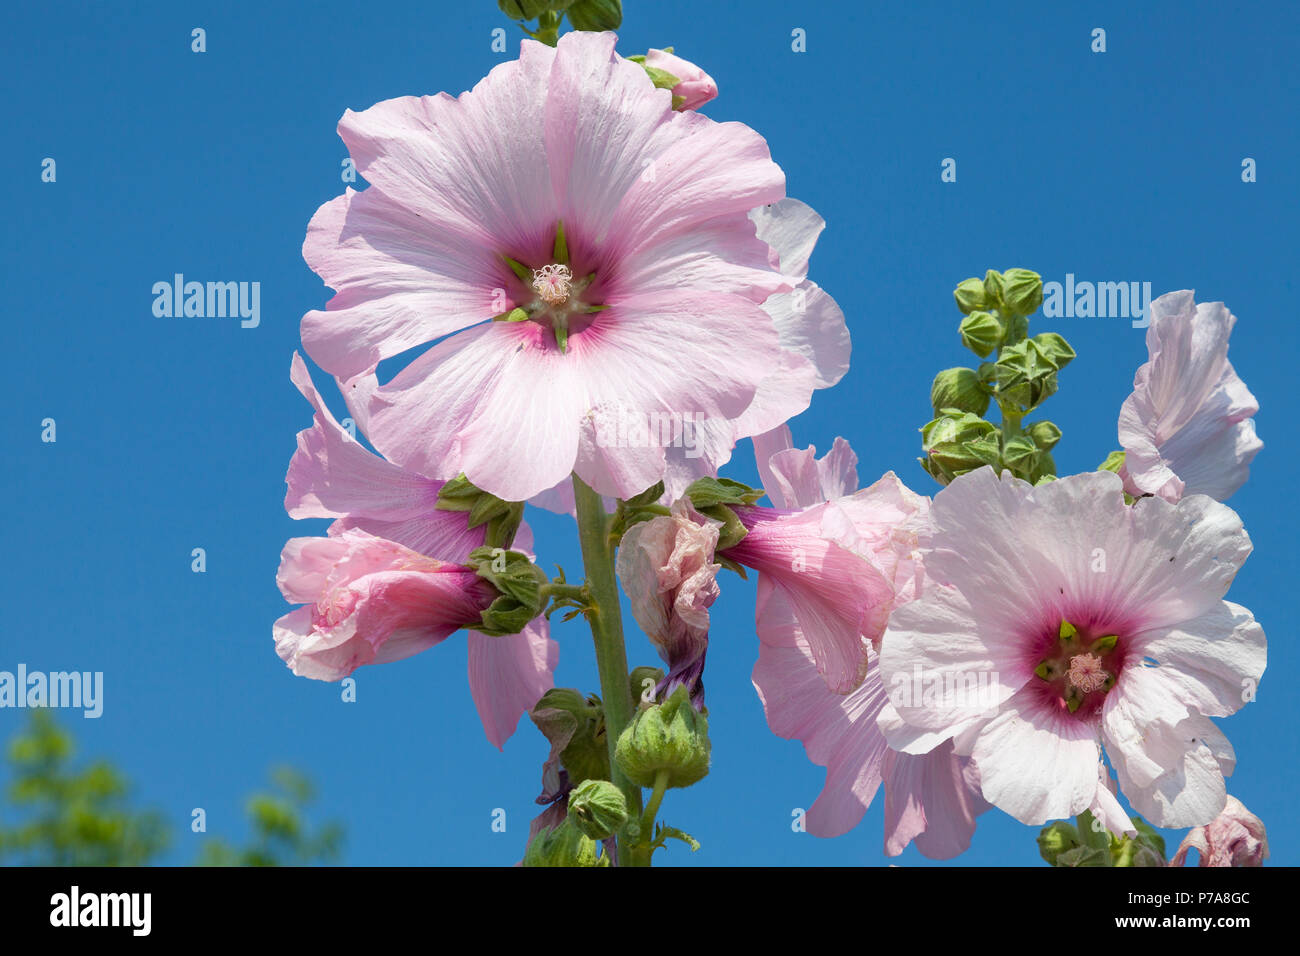 Pink Hollyhock fiore su un cono che mostra il ciclo di vita dei fiori con boccioli, apertura in piena fioritura, e appassimento. Malvaceae, fioritura primaverile, Foto Stock